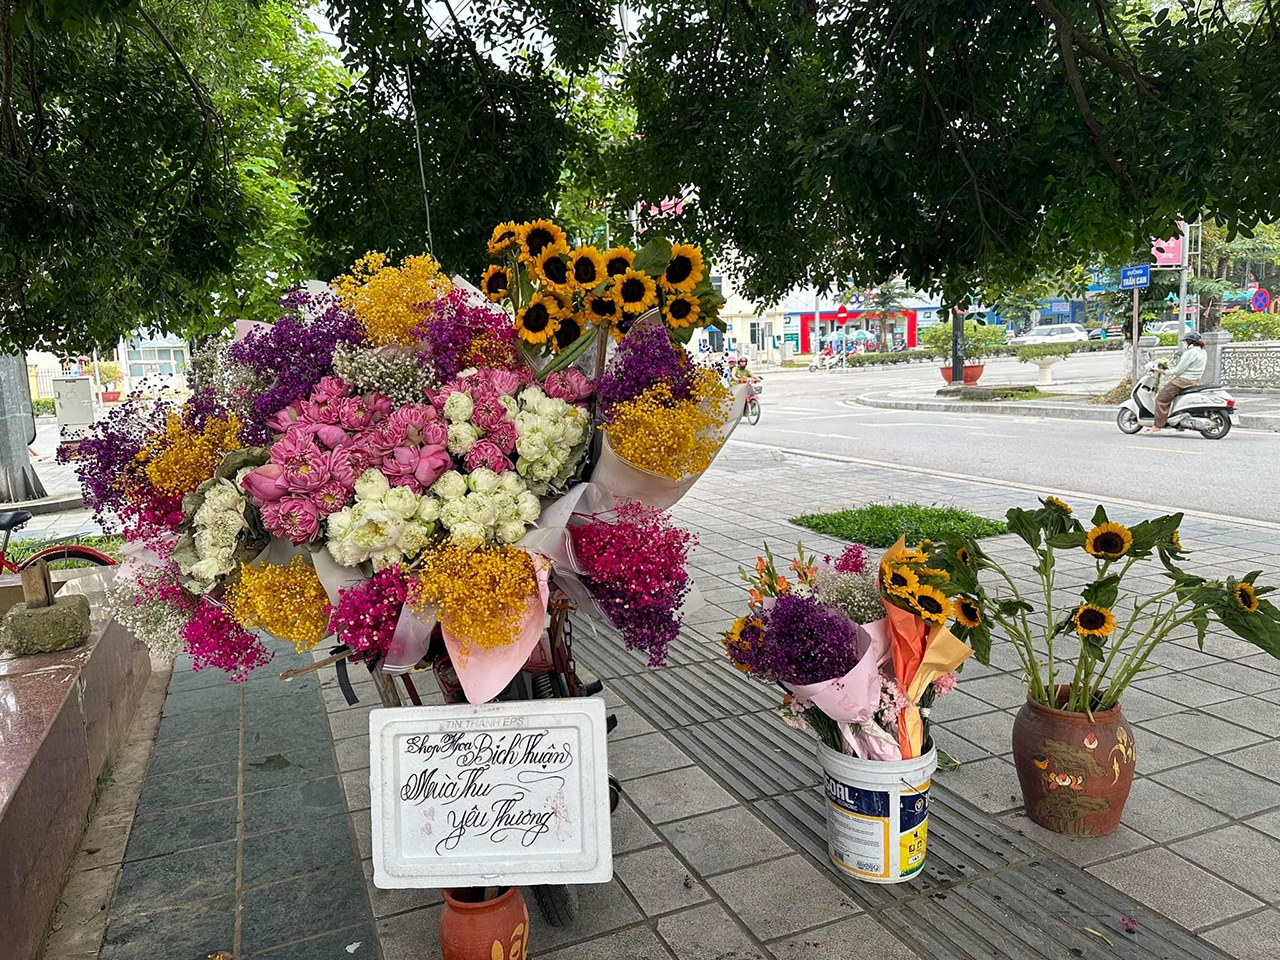 TP. Điện Biên Phủ cũng có những chiếc xe máy, xe đạp 'chở mùa thu' với tràn ngập sắc hoa